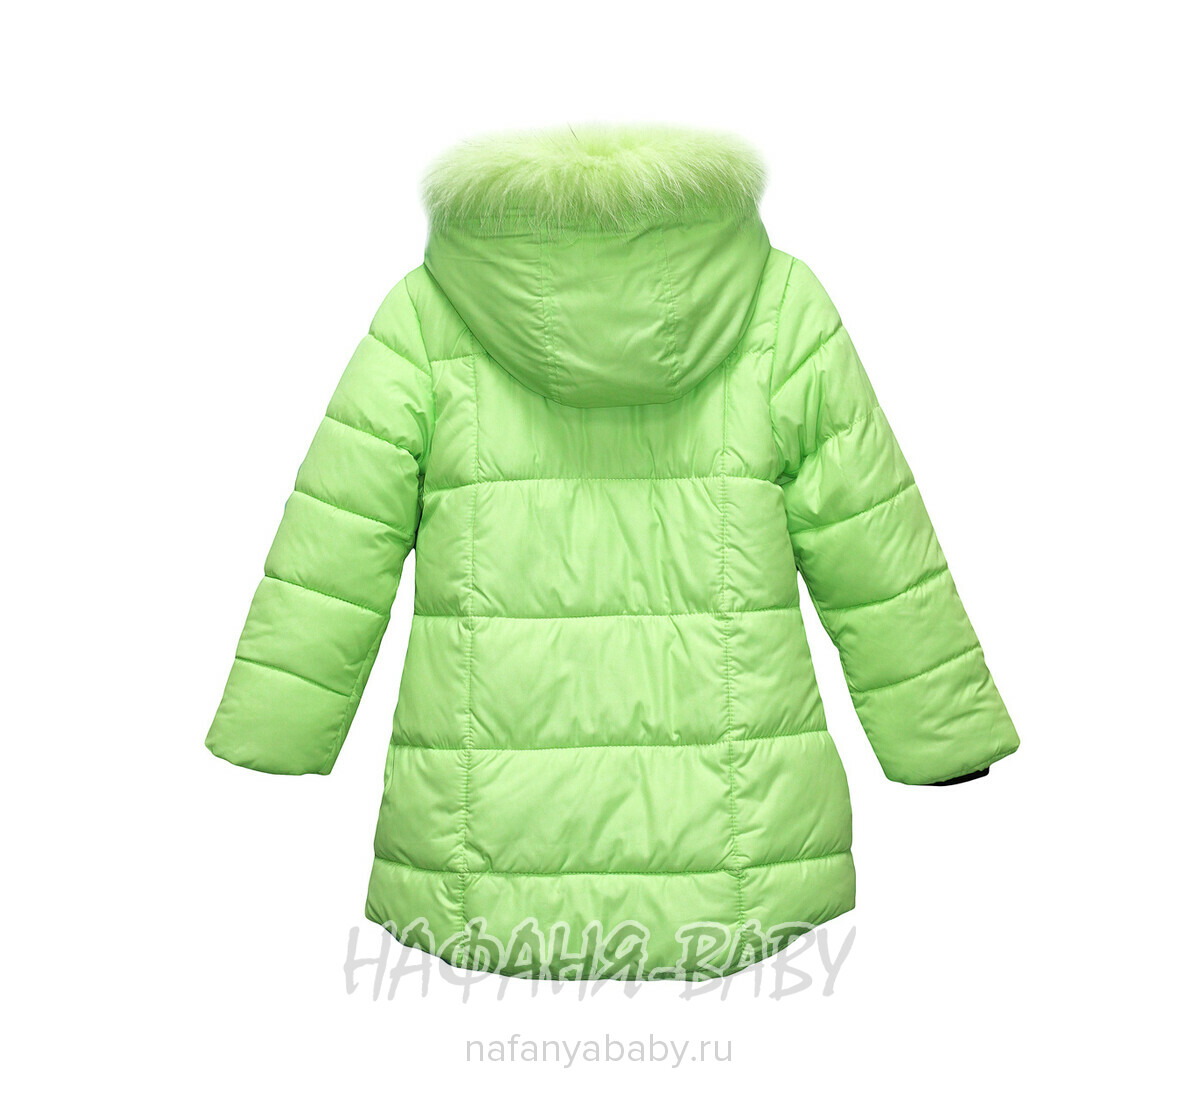 Детская зимняя куртка для девочки YINIO от 3 до 5 лет, купить в интернет-магазине Нафаня. арт: 1802.